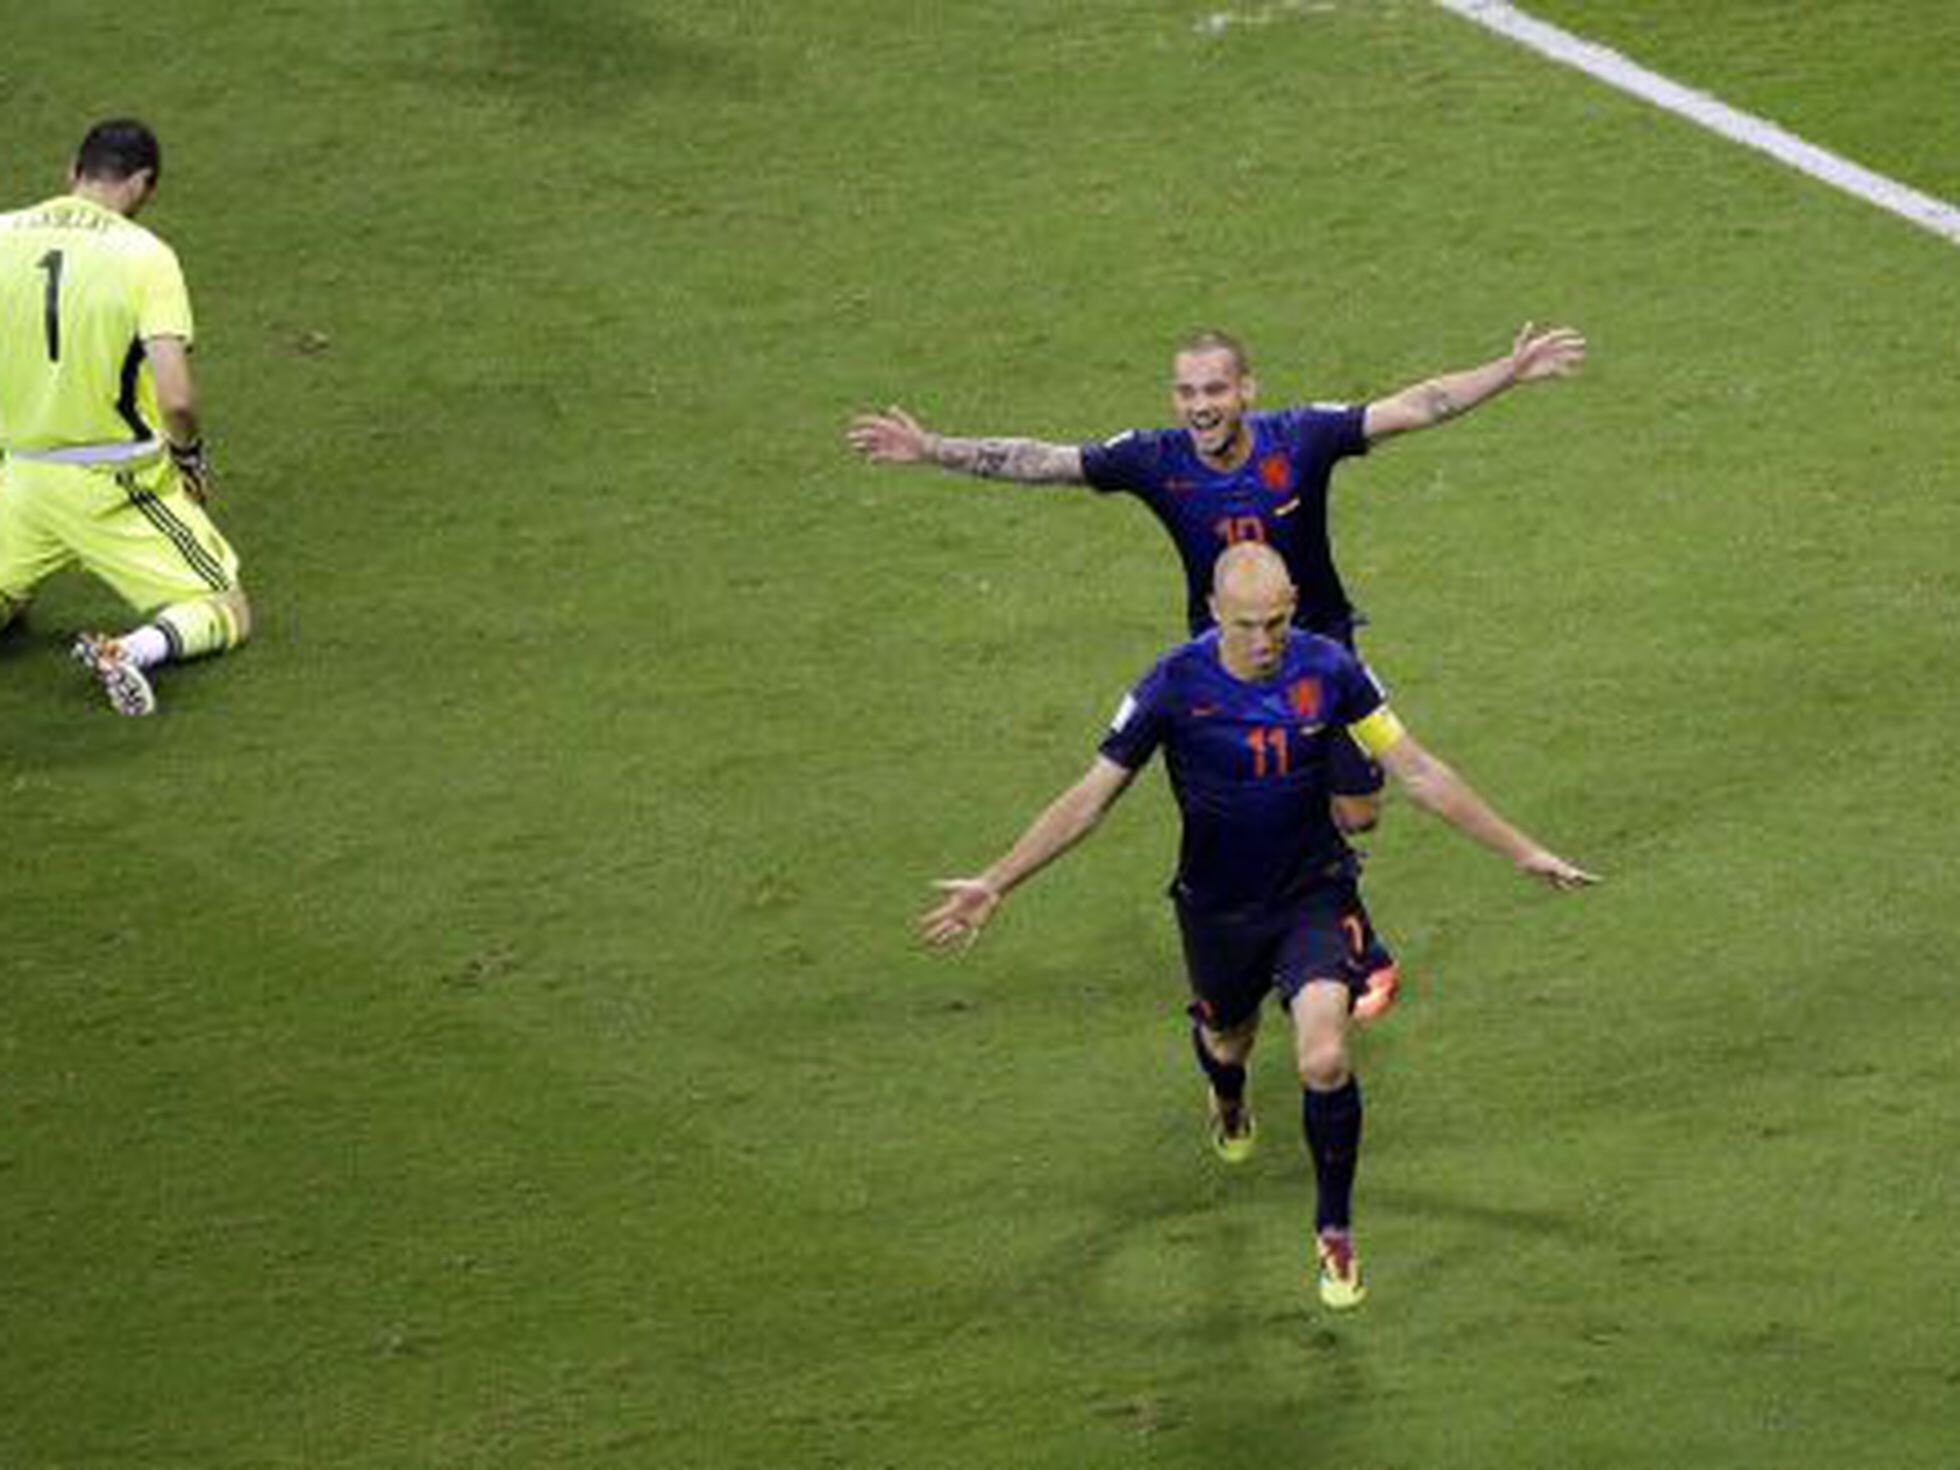 Espanha passa pela Holanda e está na semifinal da Copa do Mundo